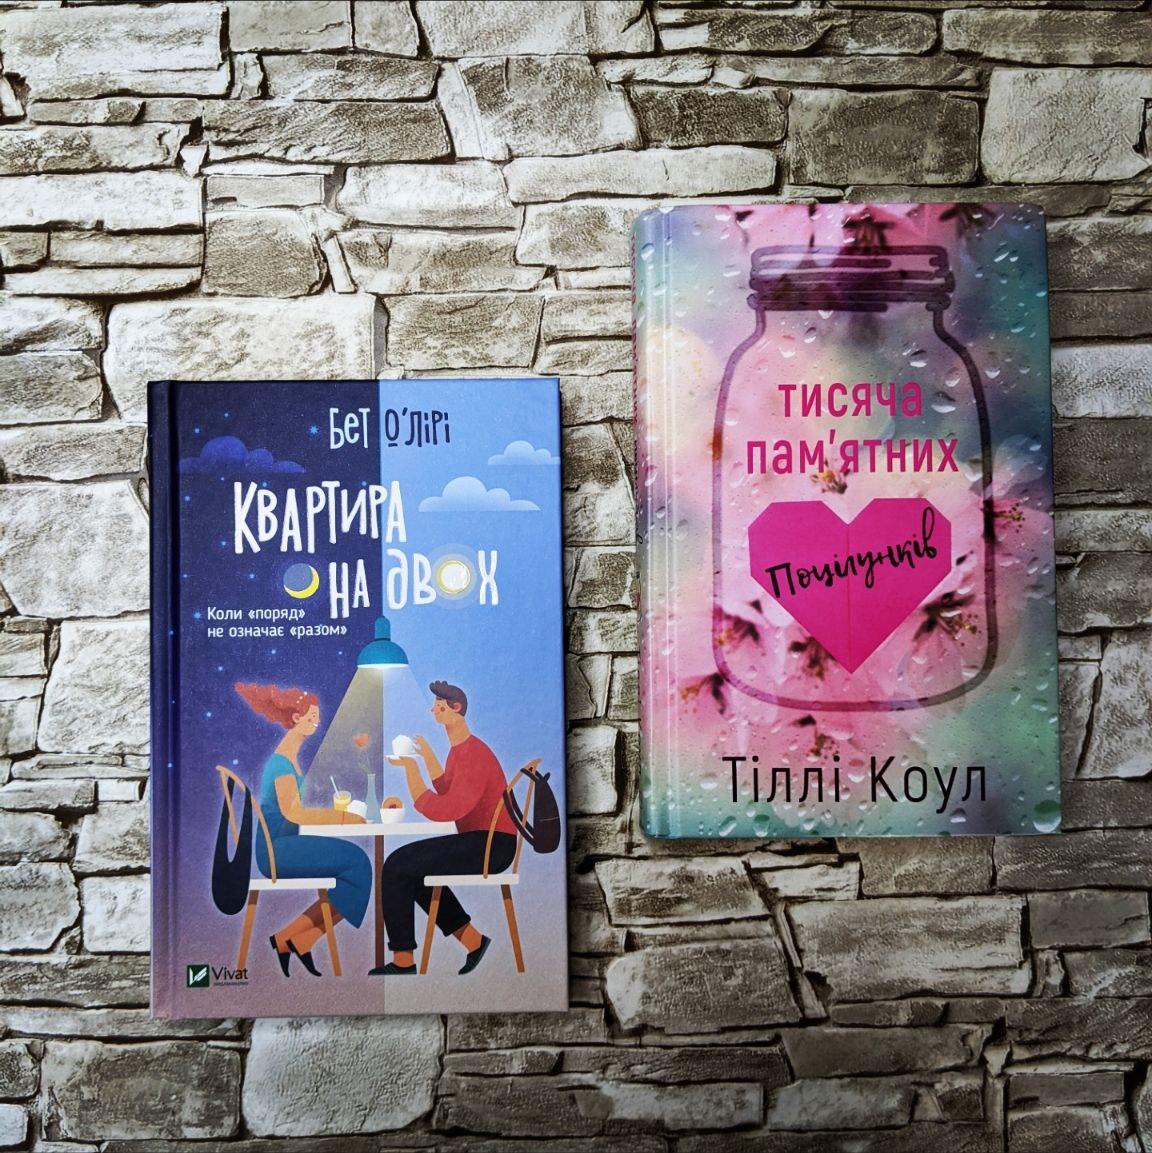 Набор книг "Тисяча пам’ятних поцілунків" Тіллі Коул, "Квартира на двох" Бет О'Лірі